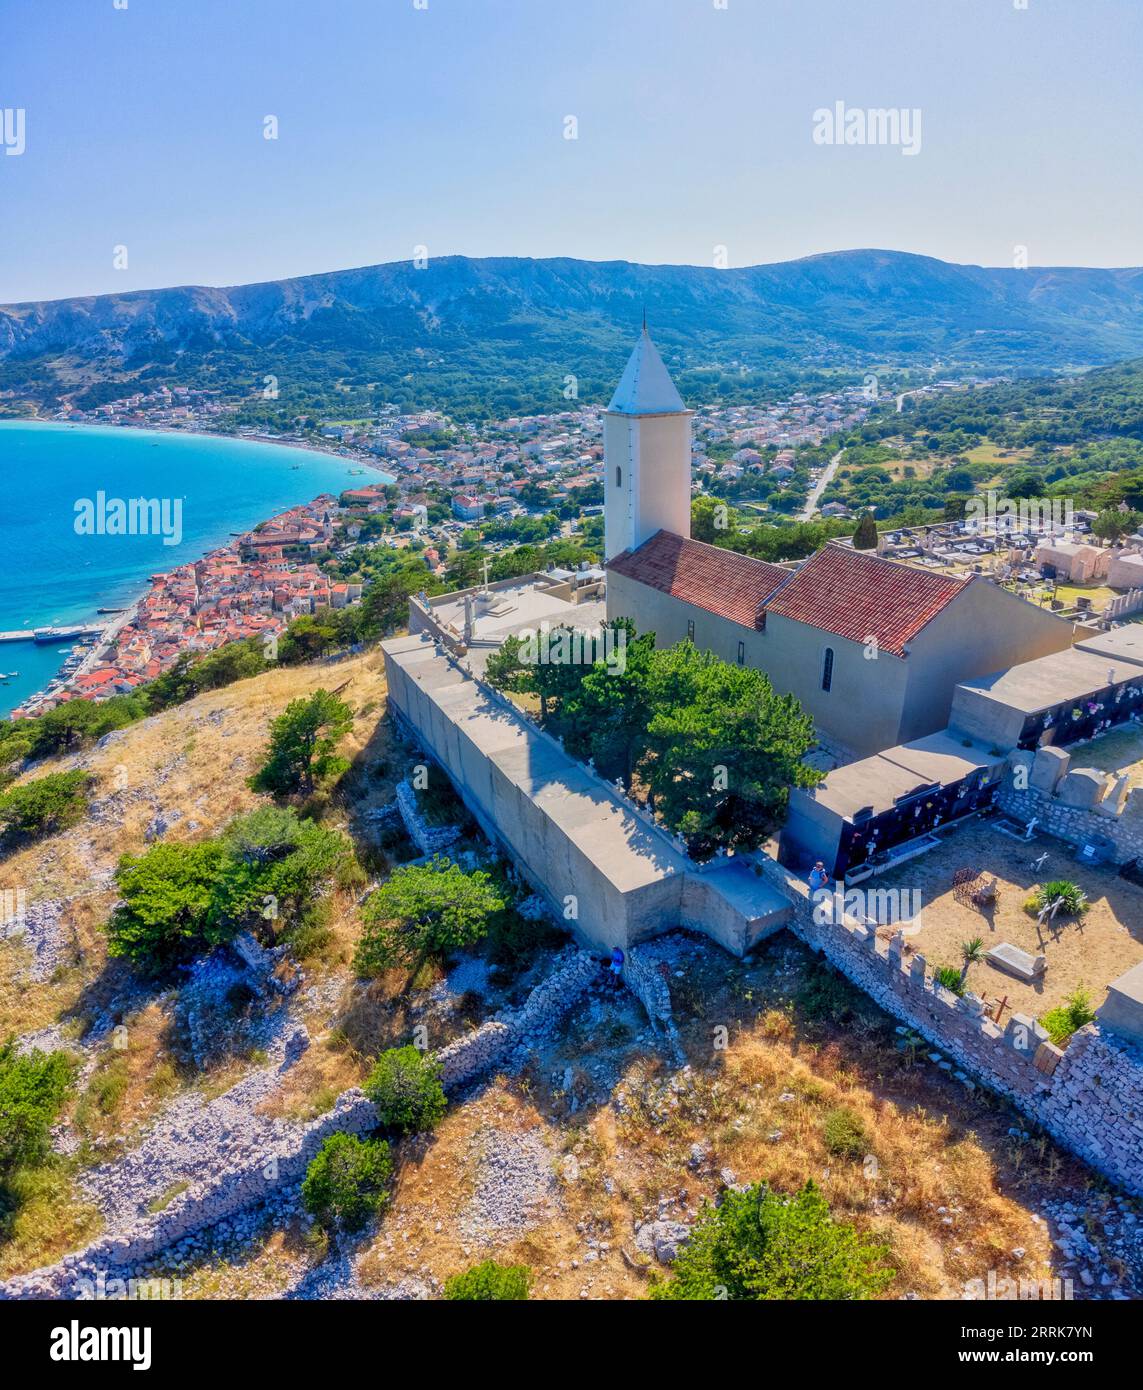 Croatia, Kvarner bay, Primorje Gorski Kotar County, island of Krk, church Sveti Ivan (church of St. Ivan) in Baska Stock Photo